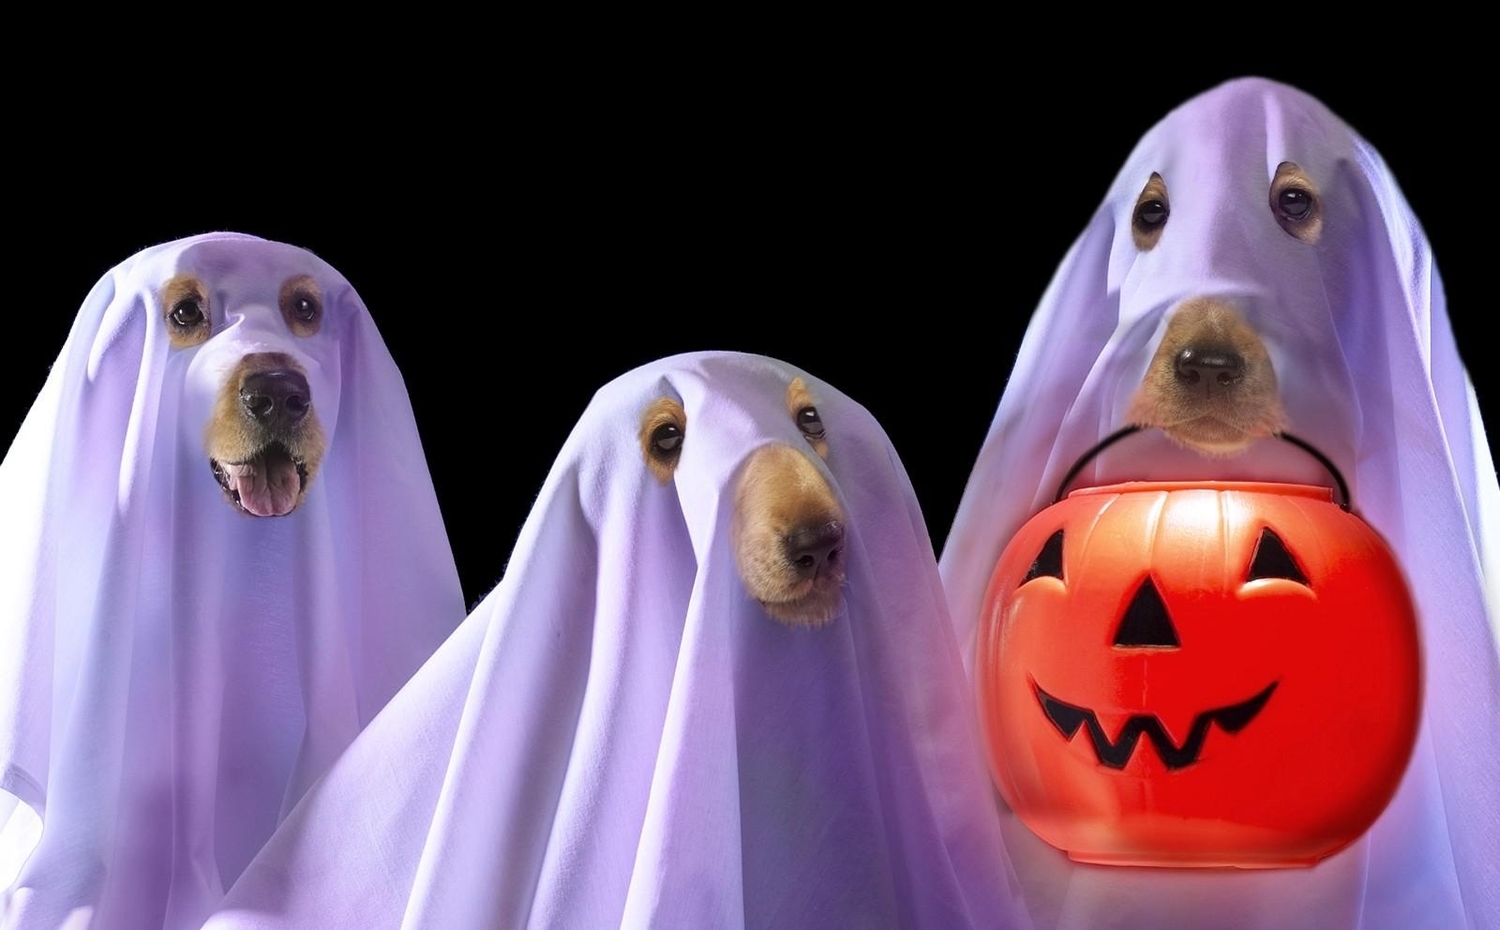 Los mejores disfraces de perros para Halloween - Noticiascuriosas.com ...